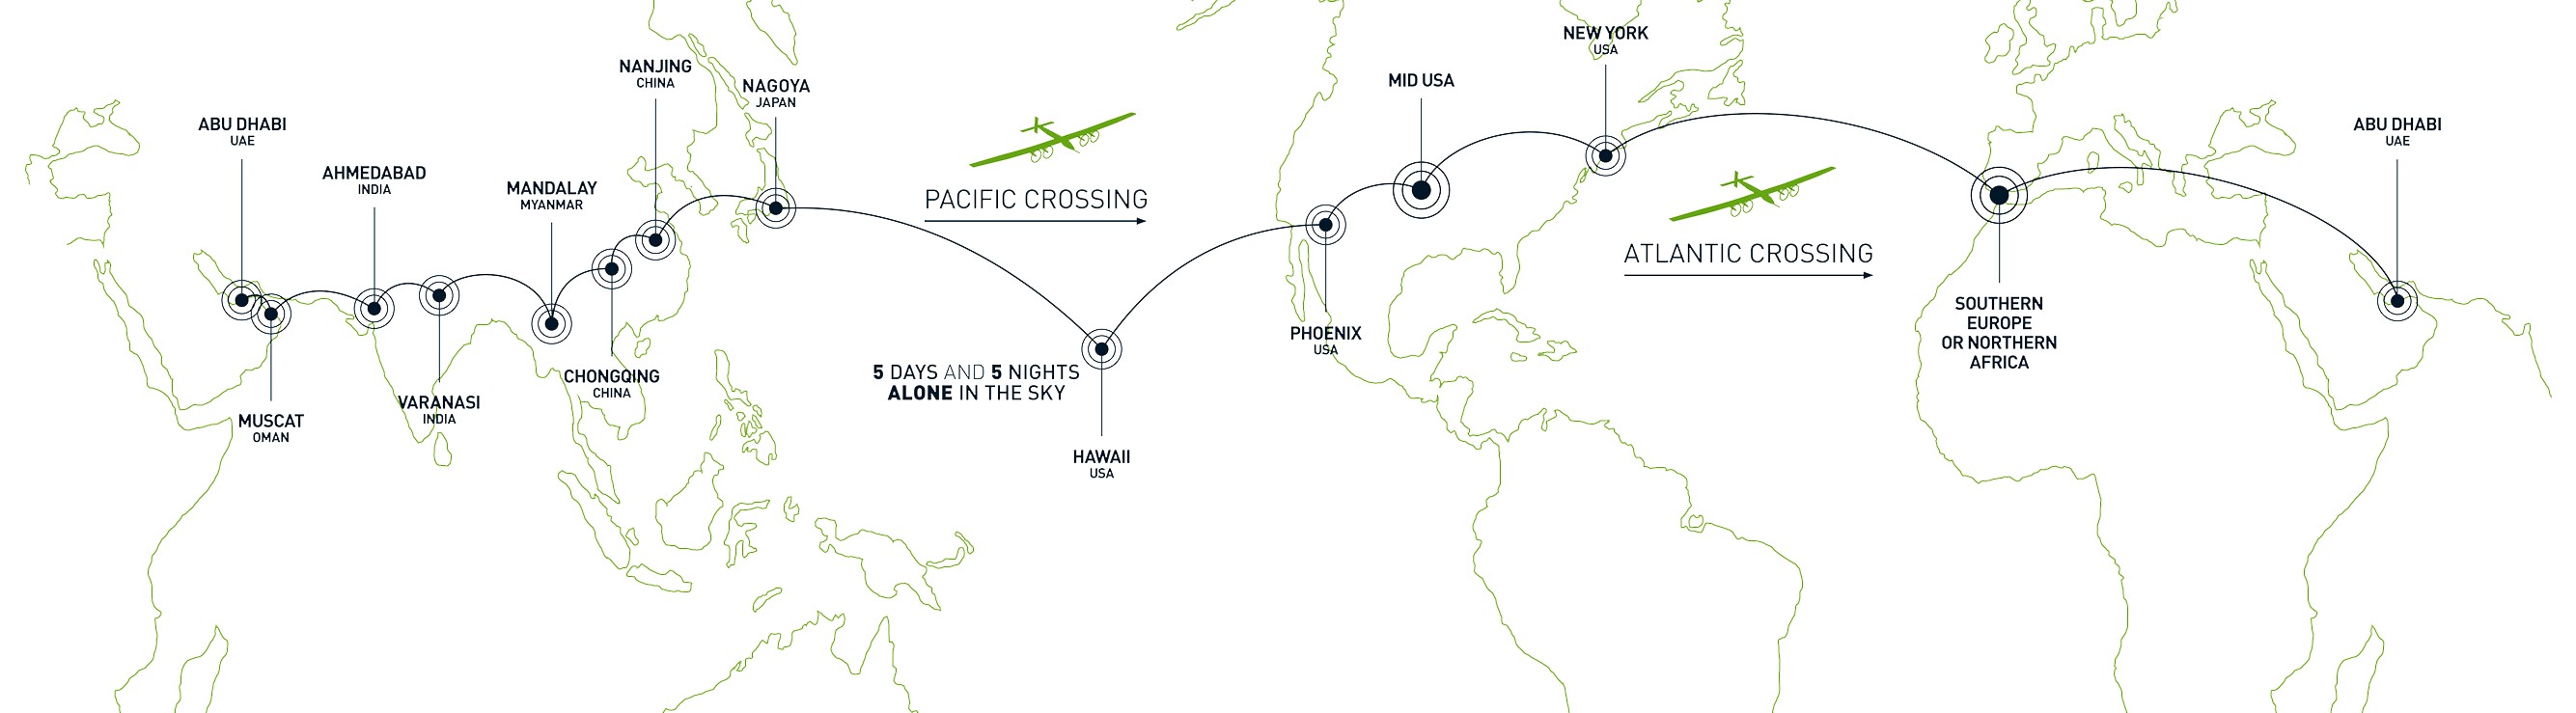 Solar Impulse réalise un nouvel exploit en traversant le pacifique en 60 heures de vol